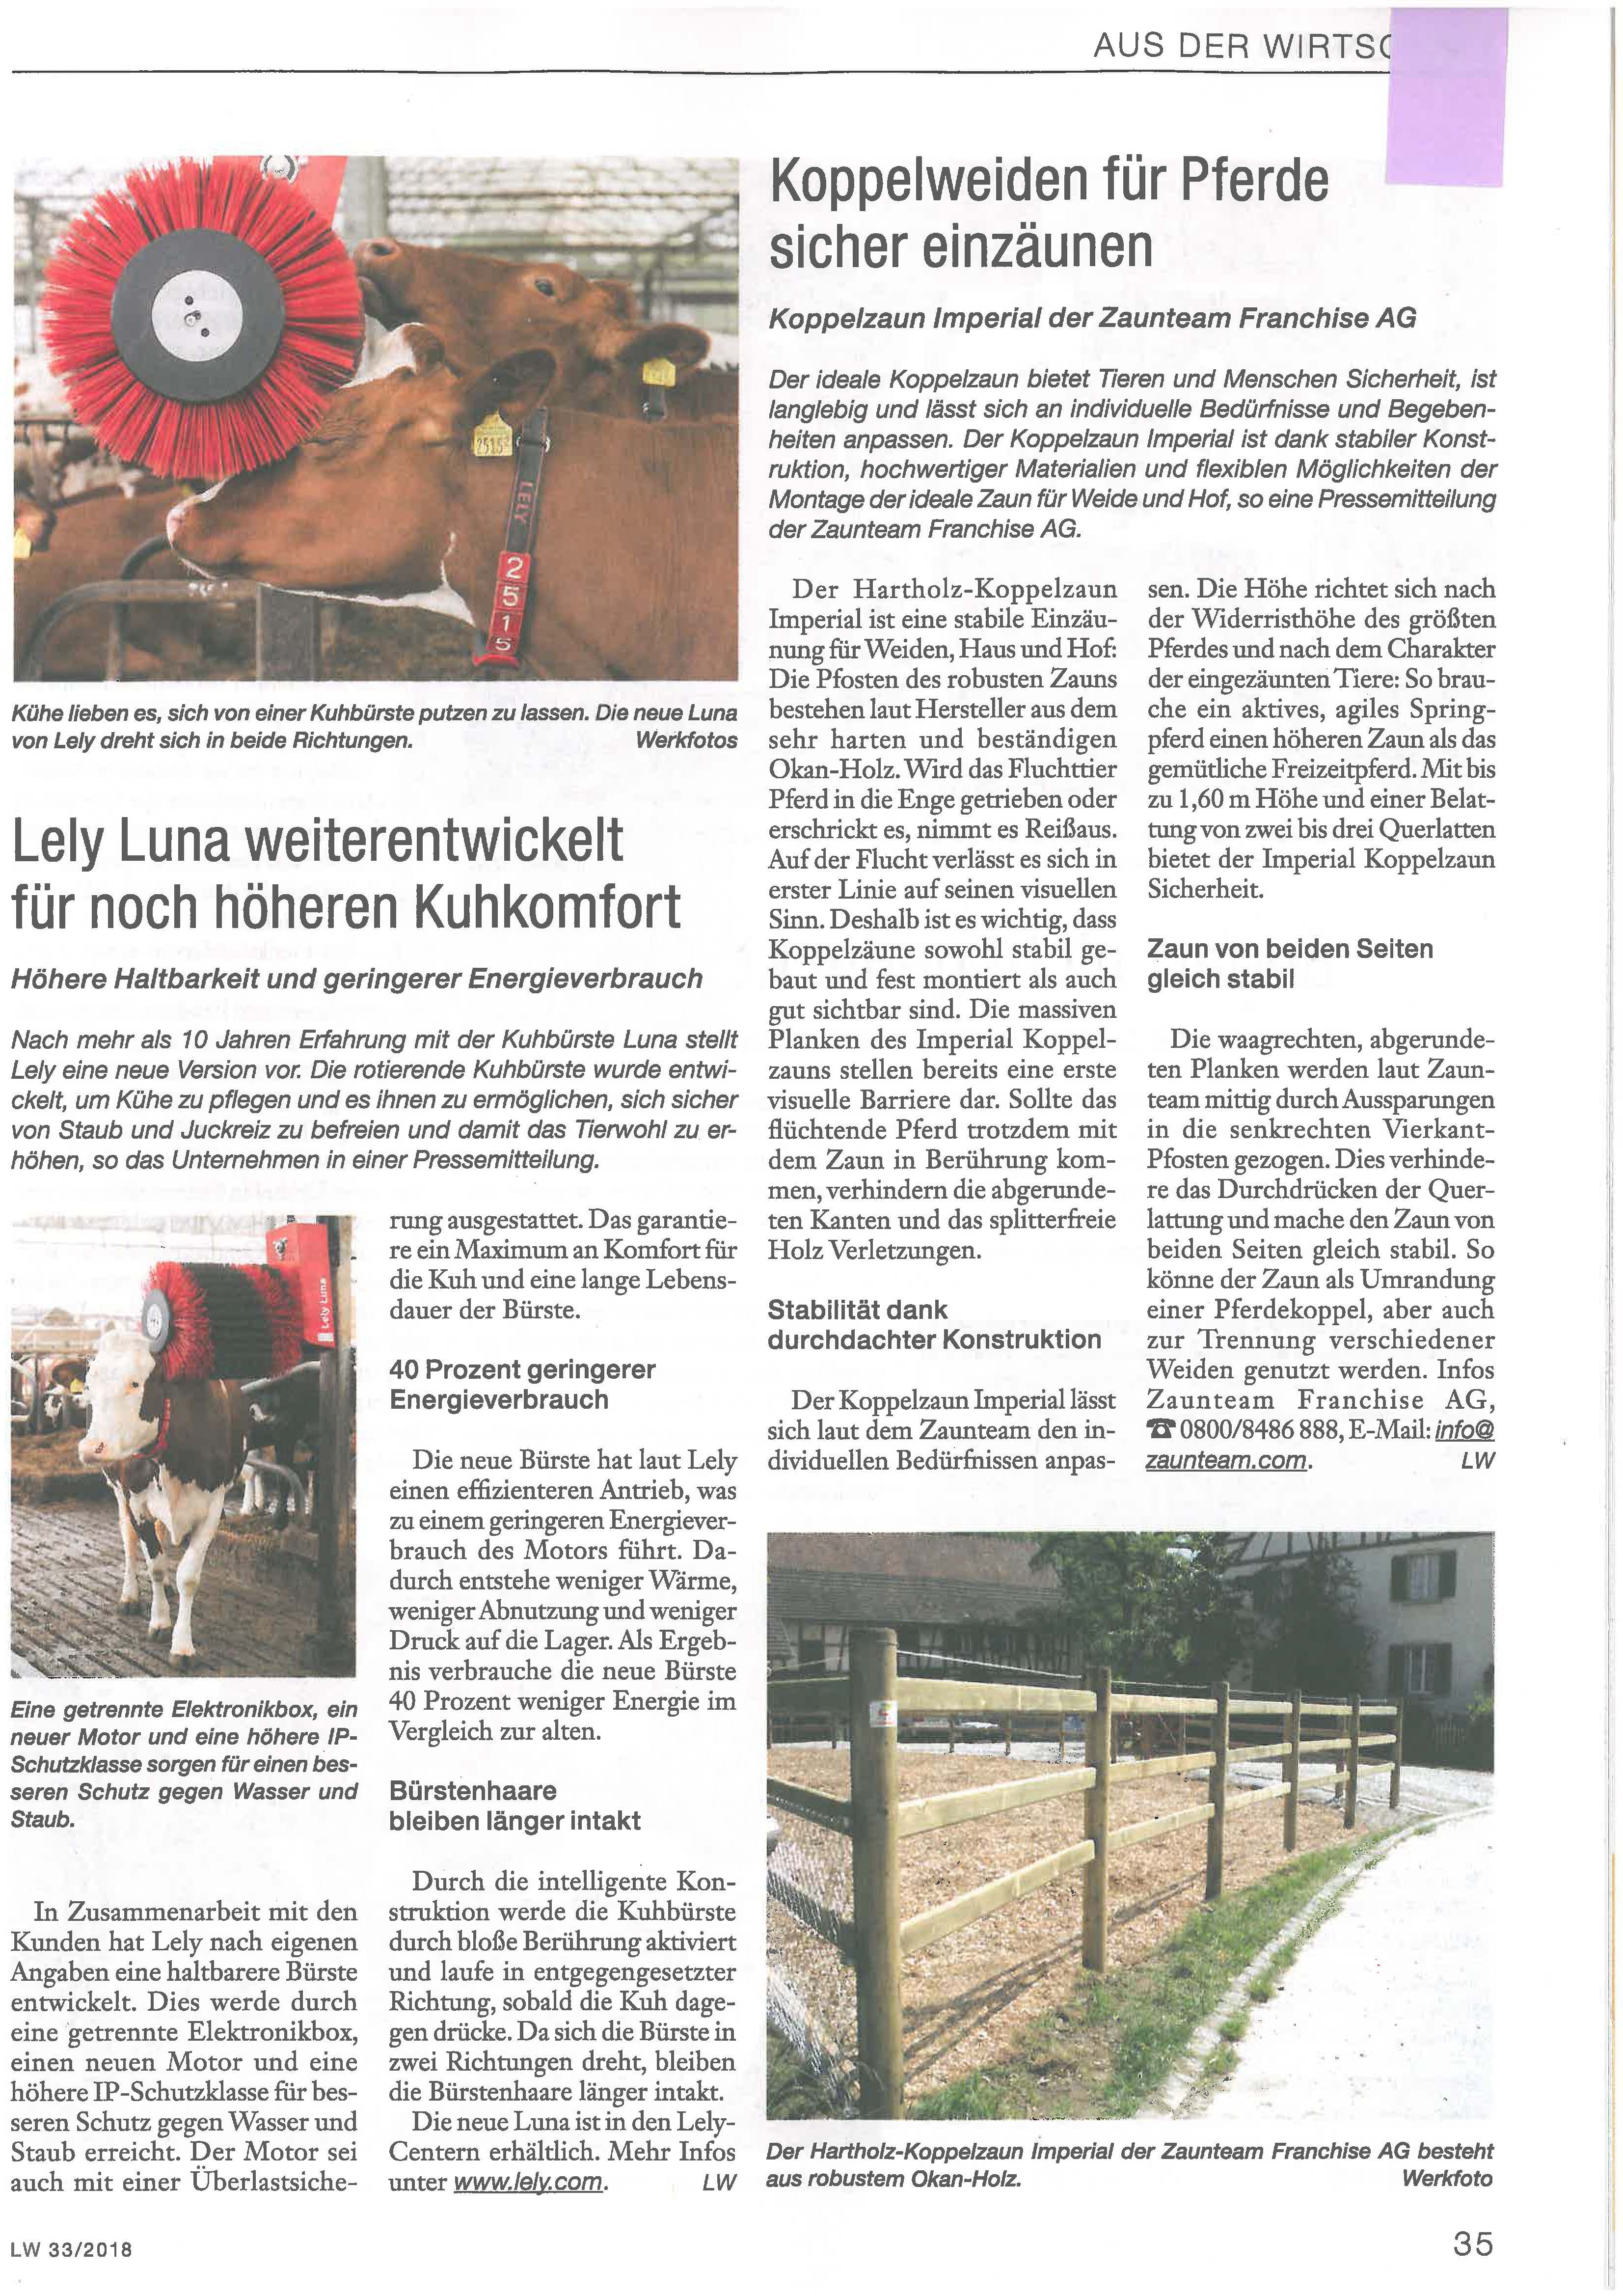 Landwirtschaftliches_Wochenblatt_20180816.jpg